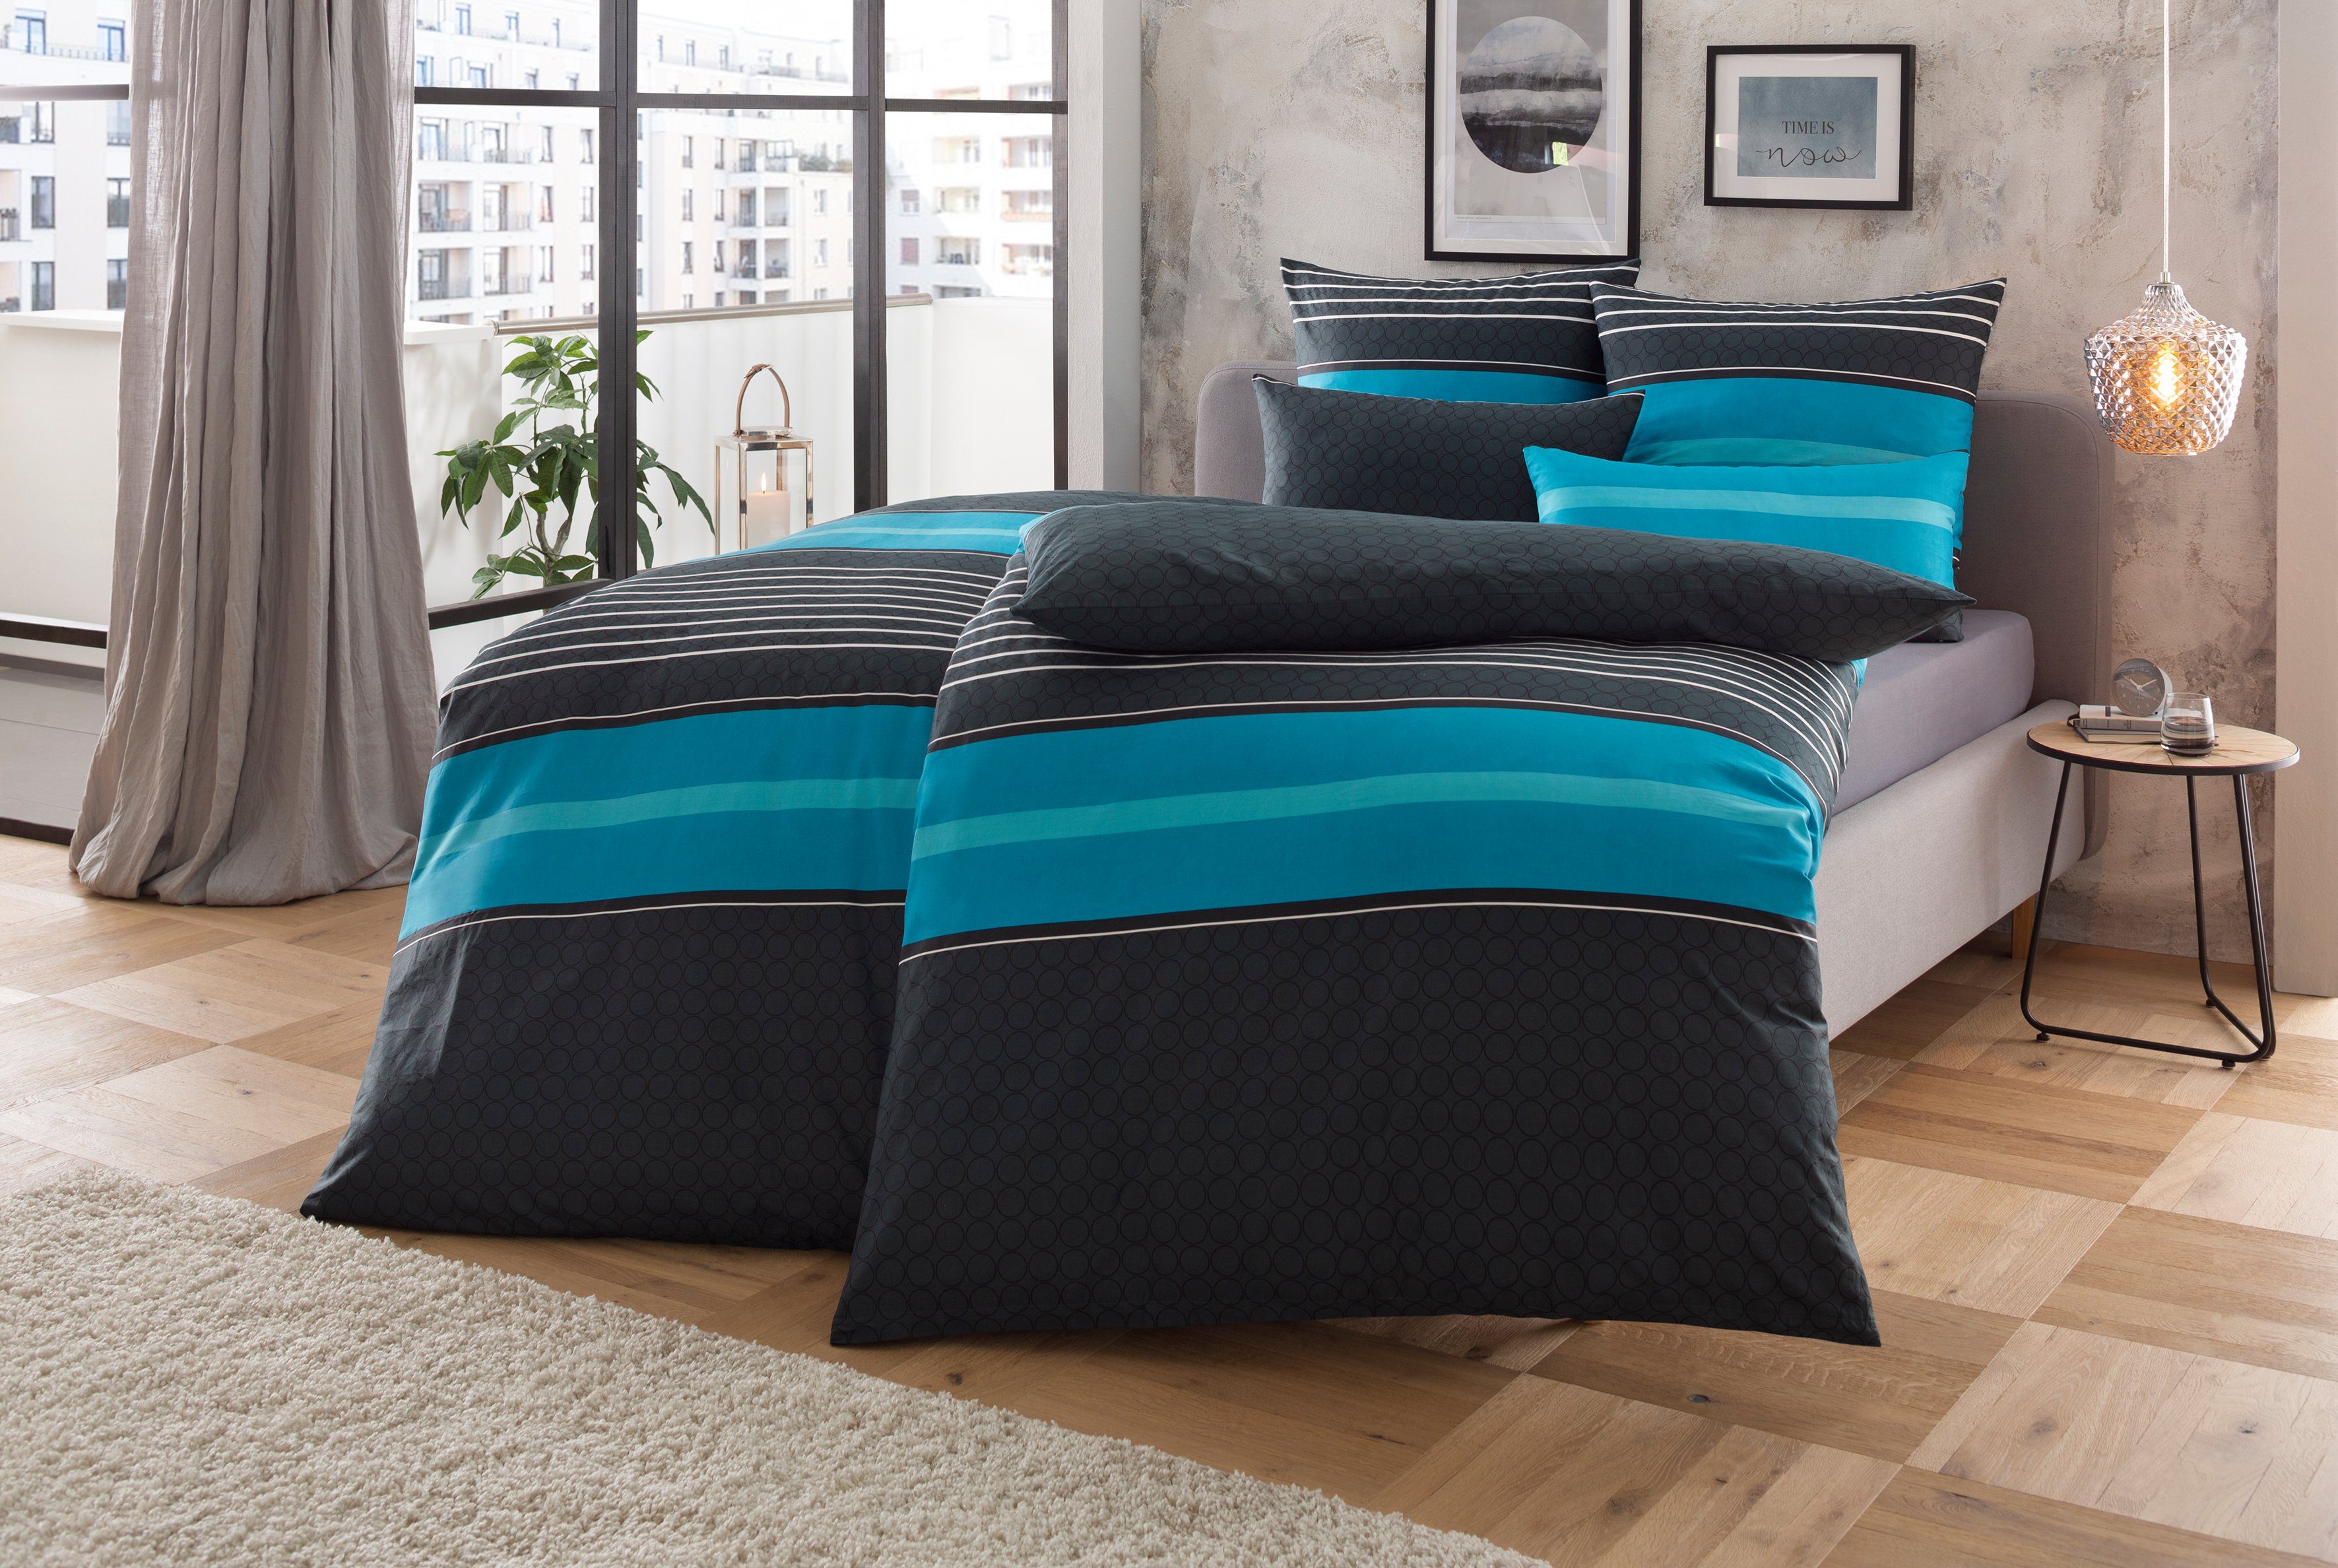 Bettwäsche in mit Linon, 2 aus 135x200 Streifen-Design, Gr. cm, Circle Baumwolle Bettwäsche my home, 155x220 Bettwäsche teilig, oder moderne